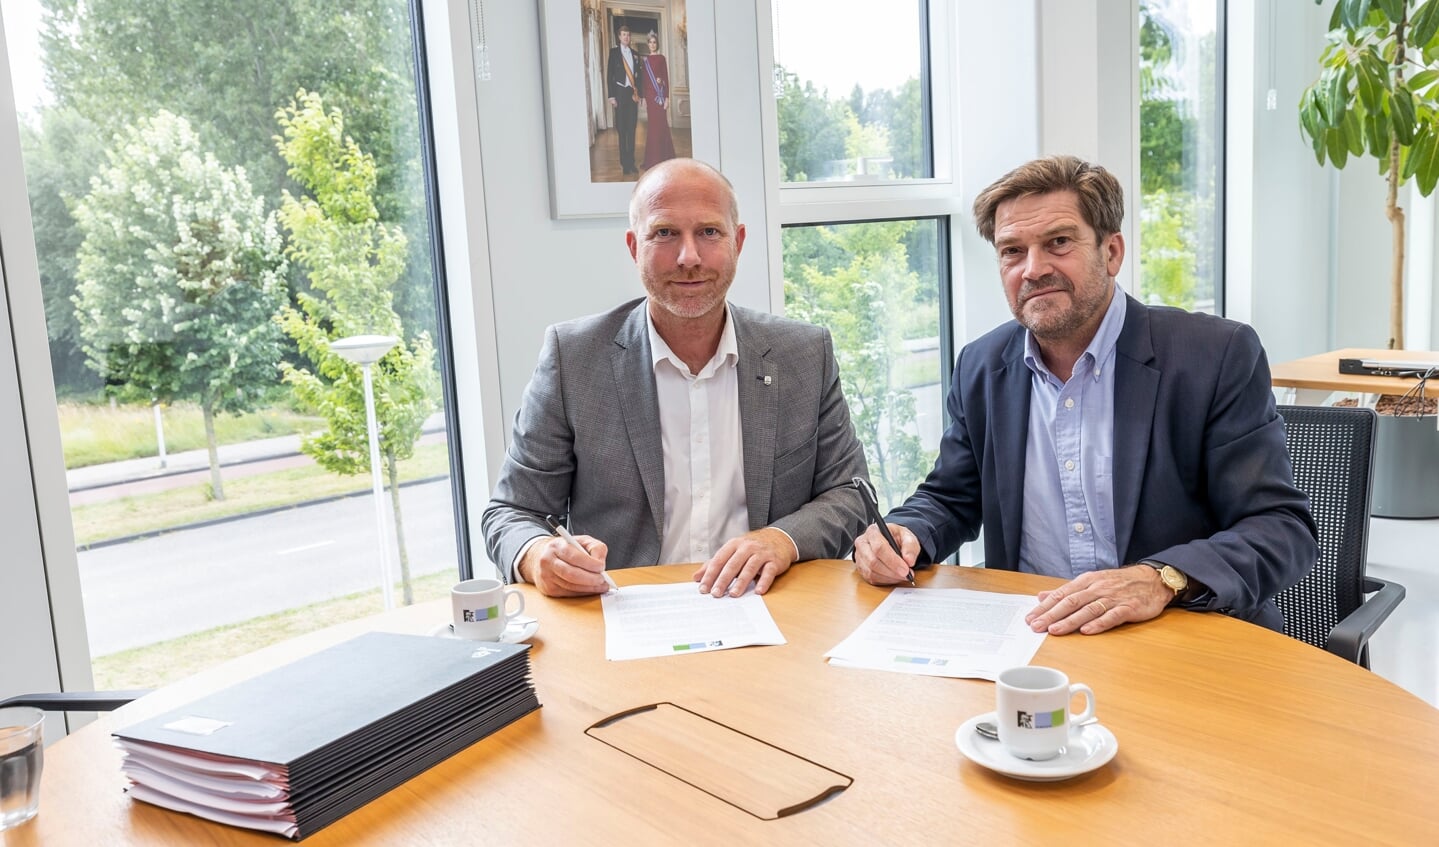 Wethouder Michiel Ferwerda en Wilfried Stribos onderteken de overeenkomst.